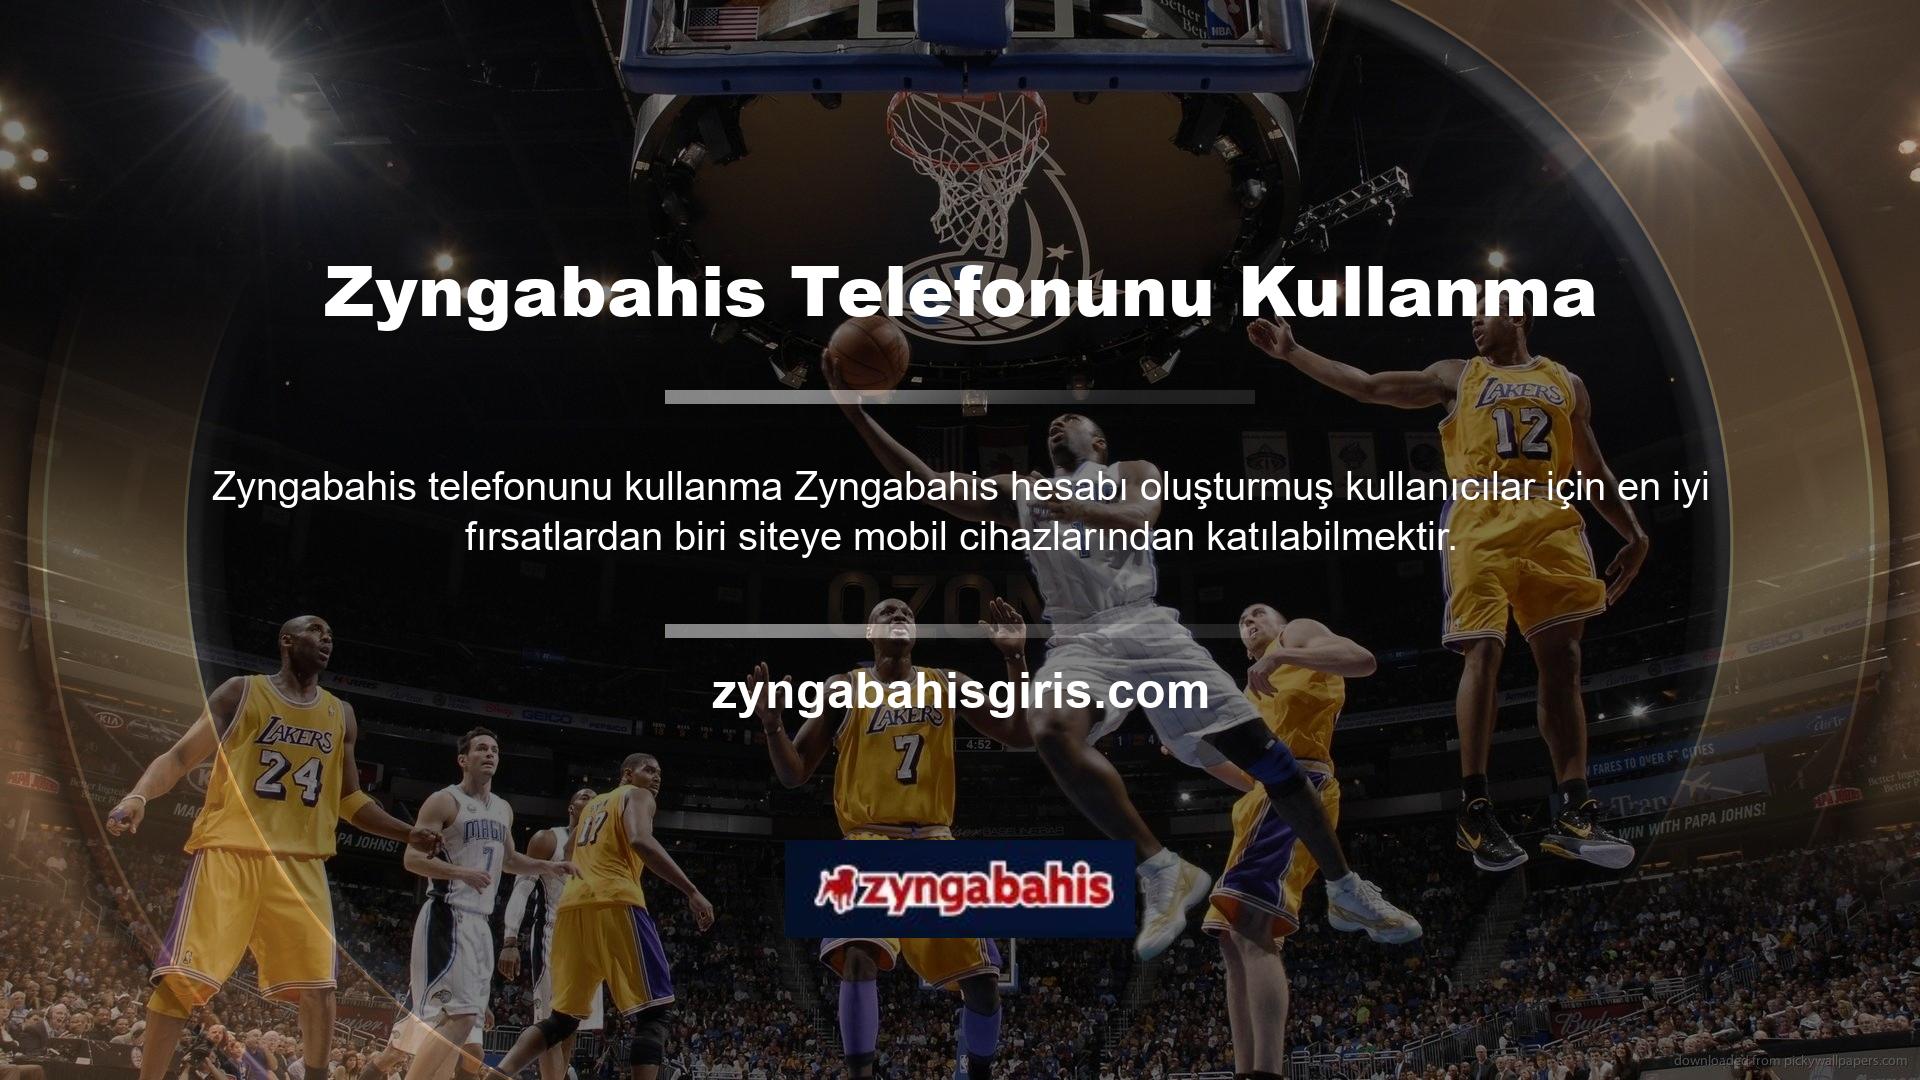 Diğer birçok bahis sitesi gibi Zyngabahis sitesi de mobil kullanım konusunda üyelerini memnun etmektedir